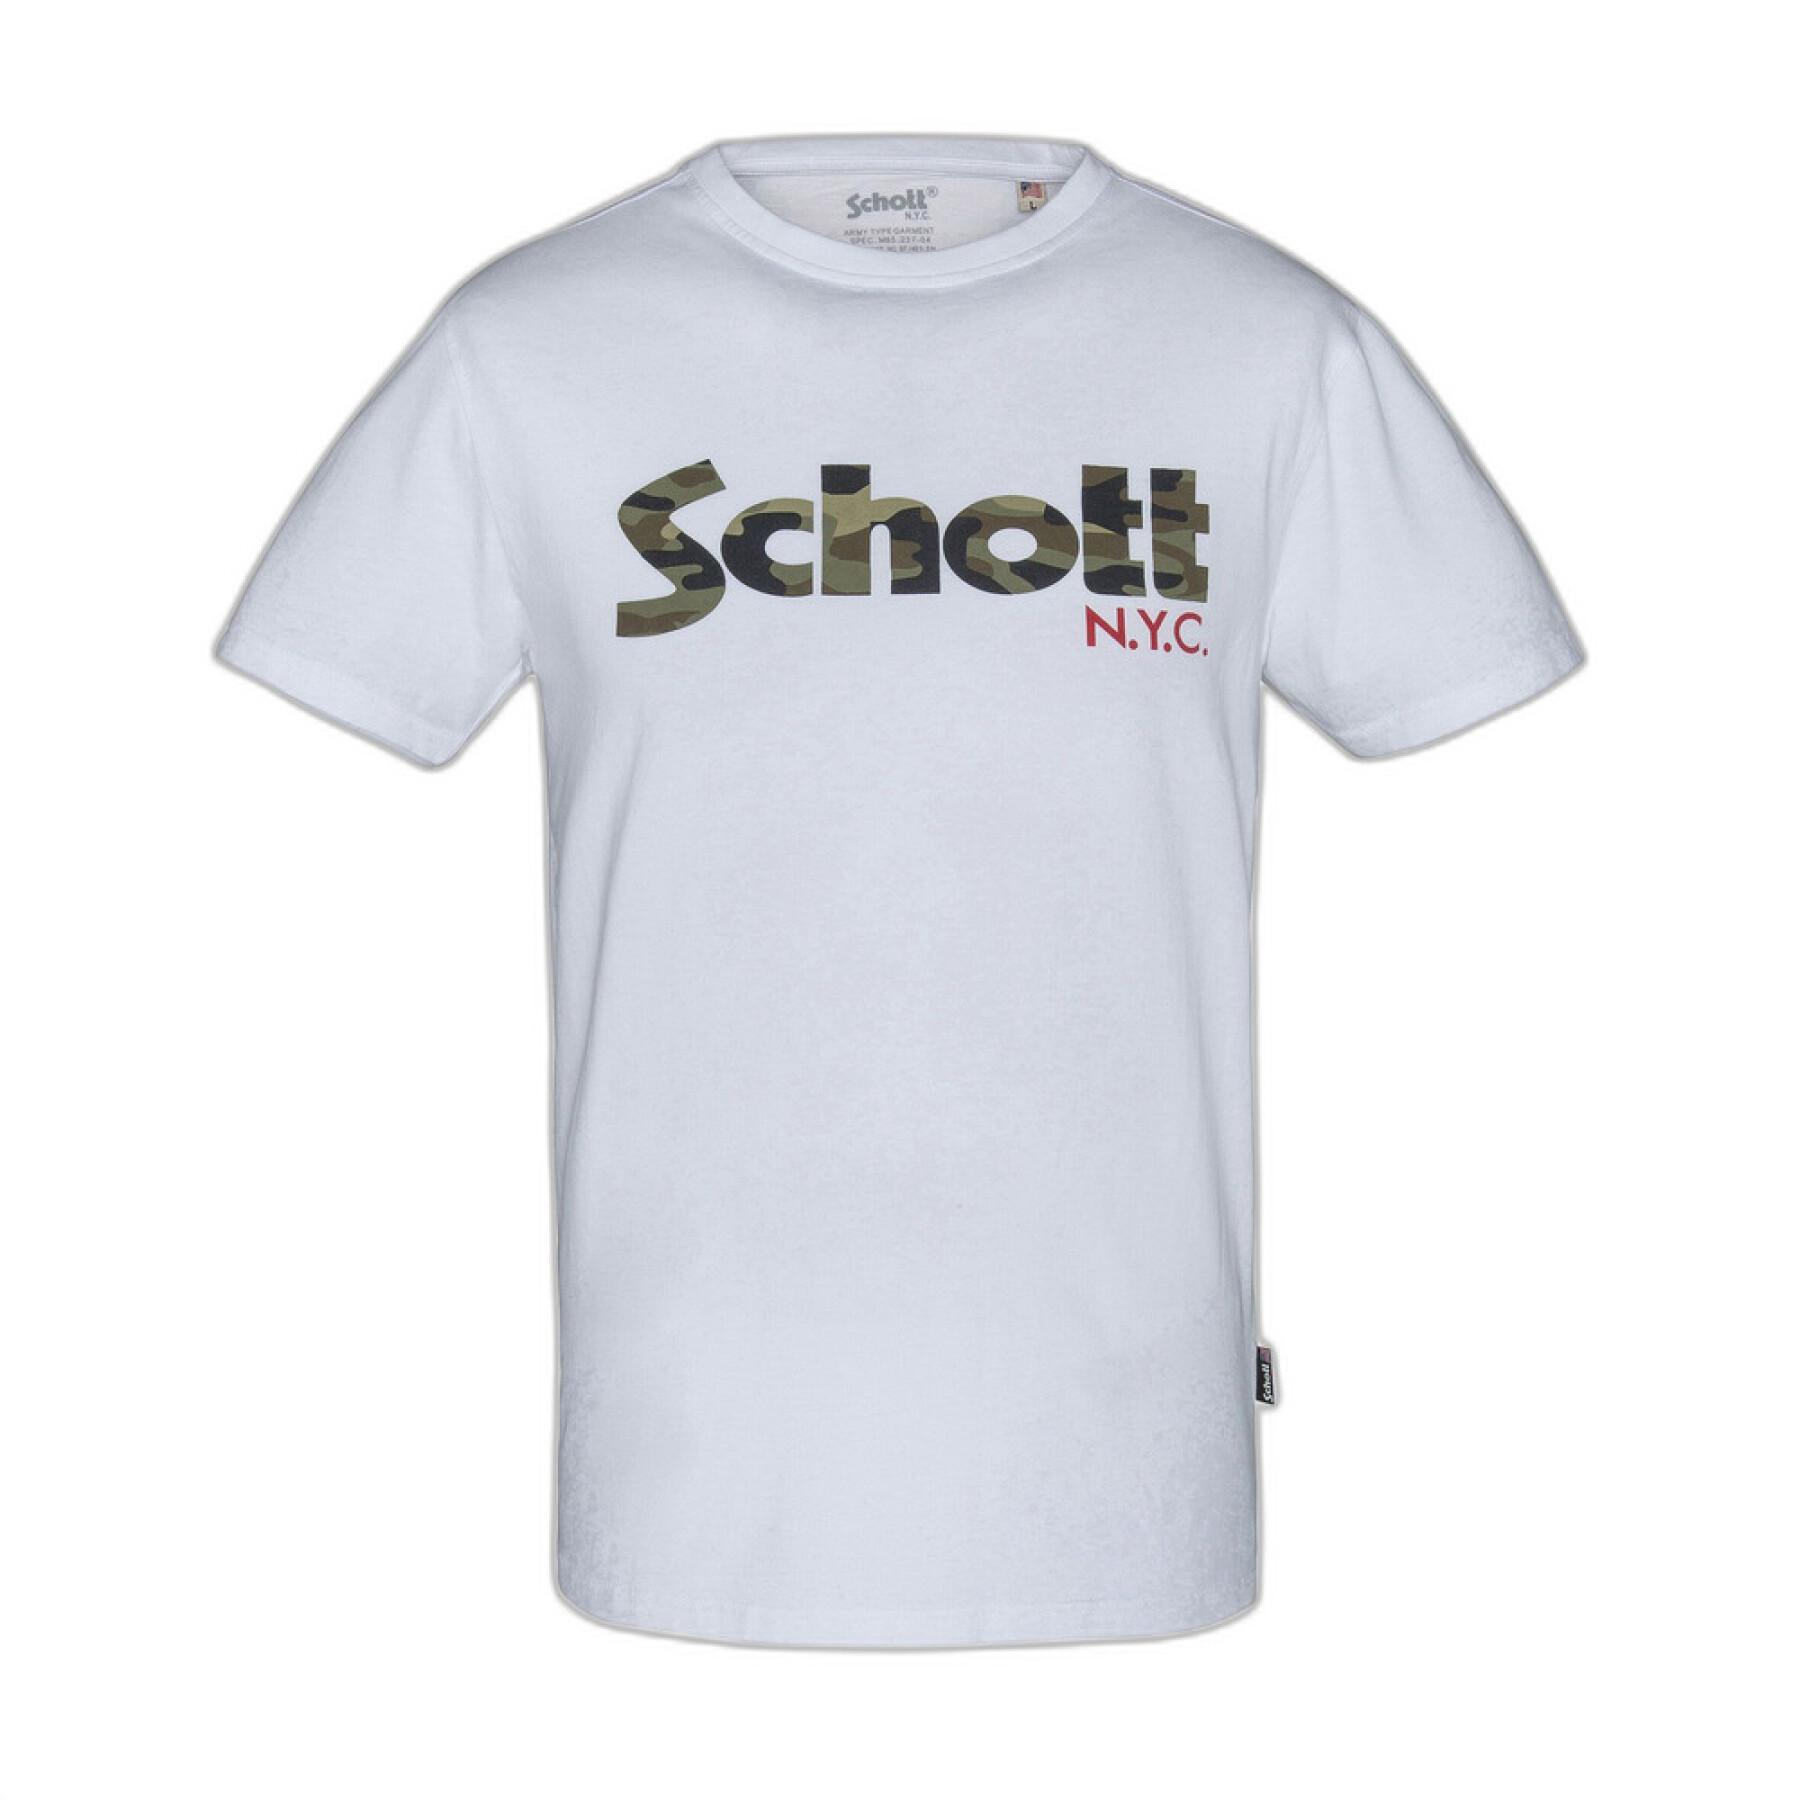 Maglietta a manica corta con grande logo Schott